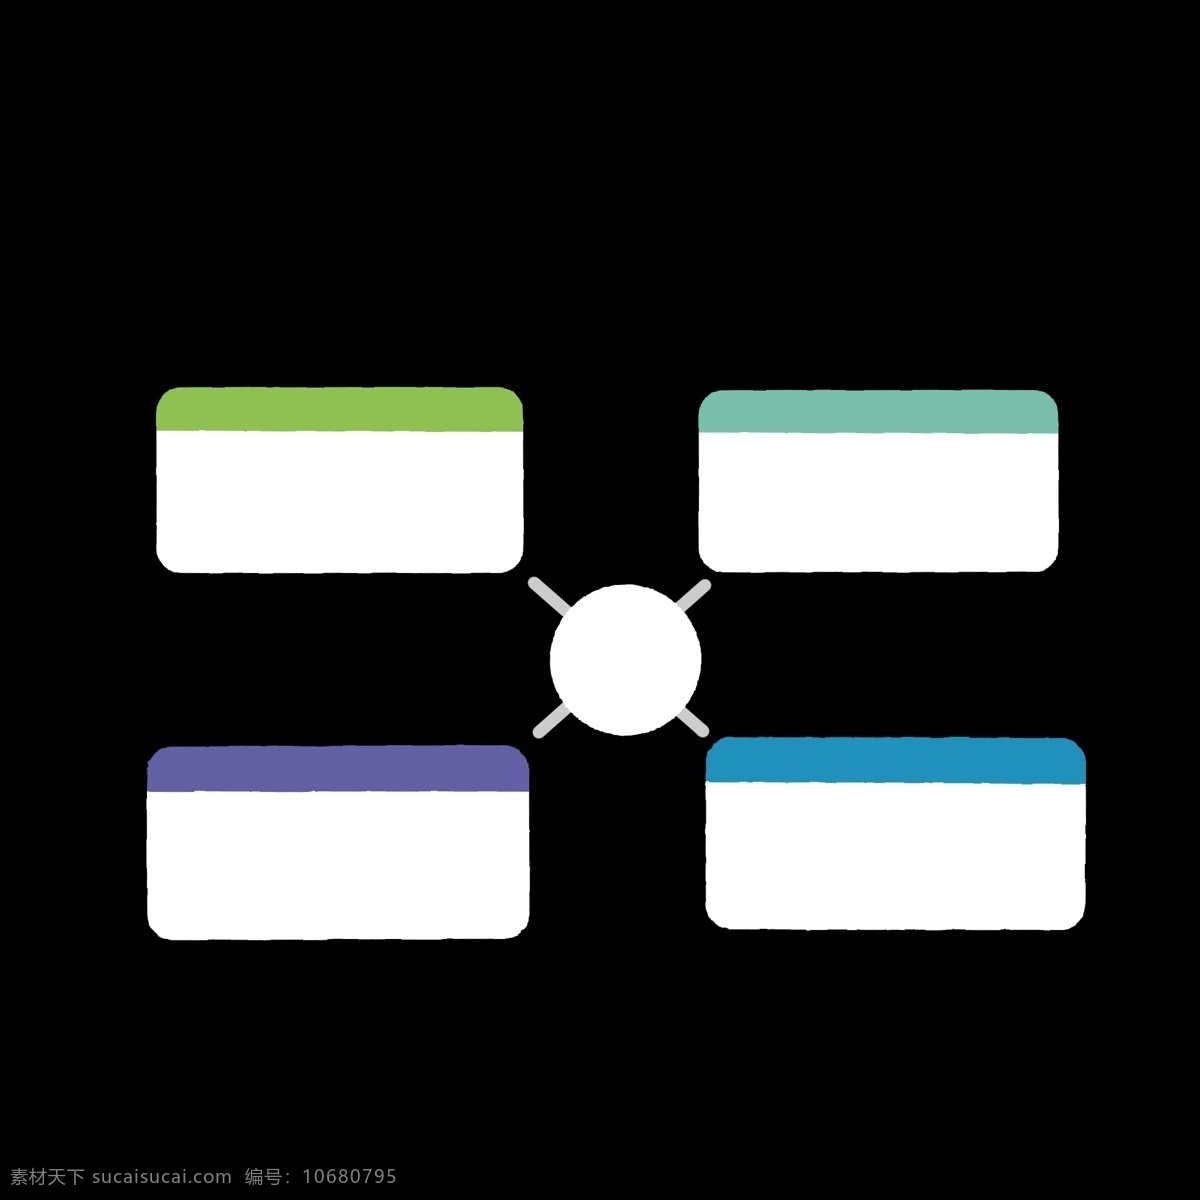 不同 颜色 分解 分类 表 冷色调 白色 绿色 长方形 分别开 区分开 ppt专用 卡通 简约 简单 简洁 分解图 分化表